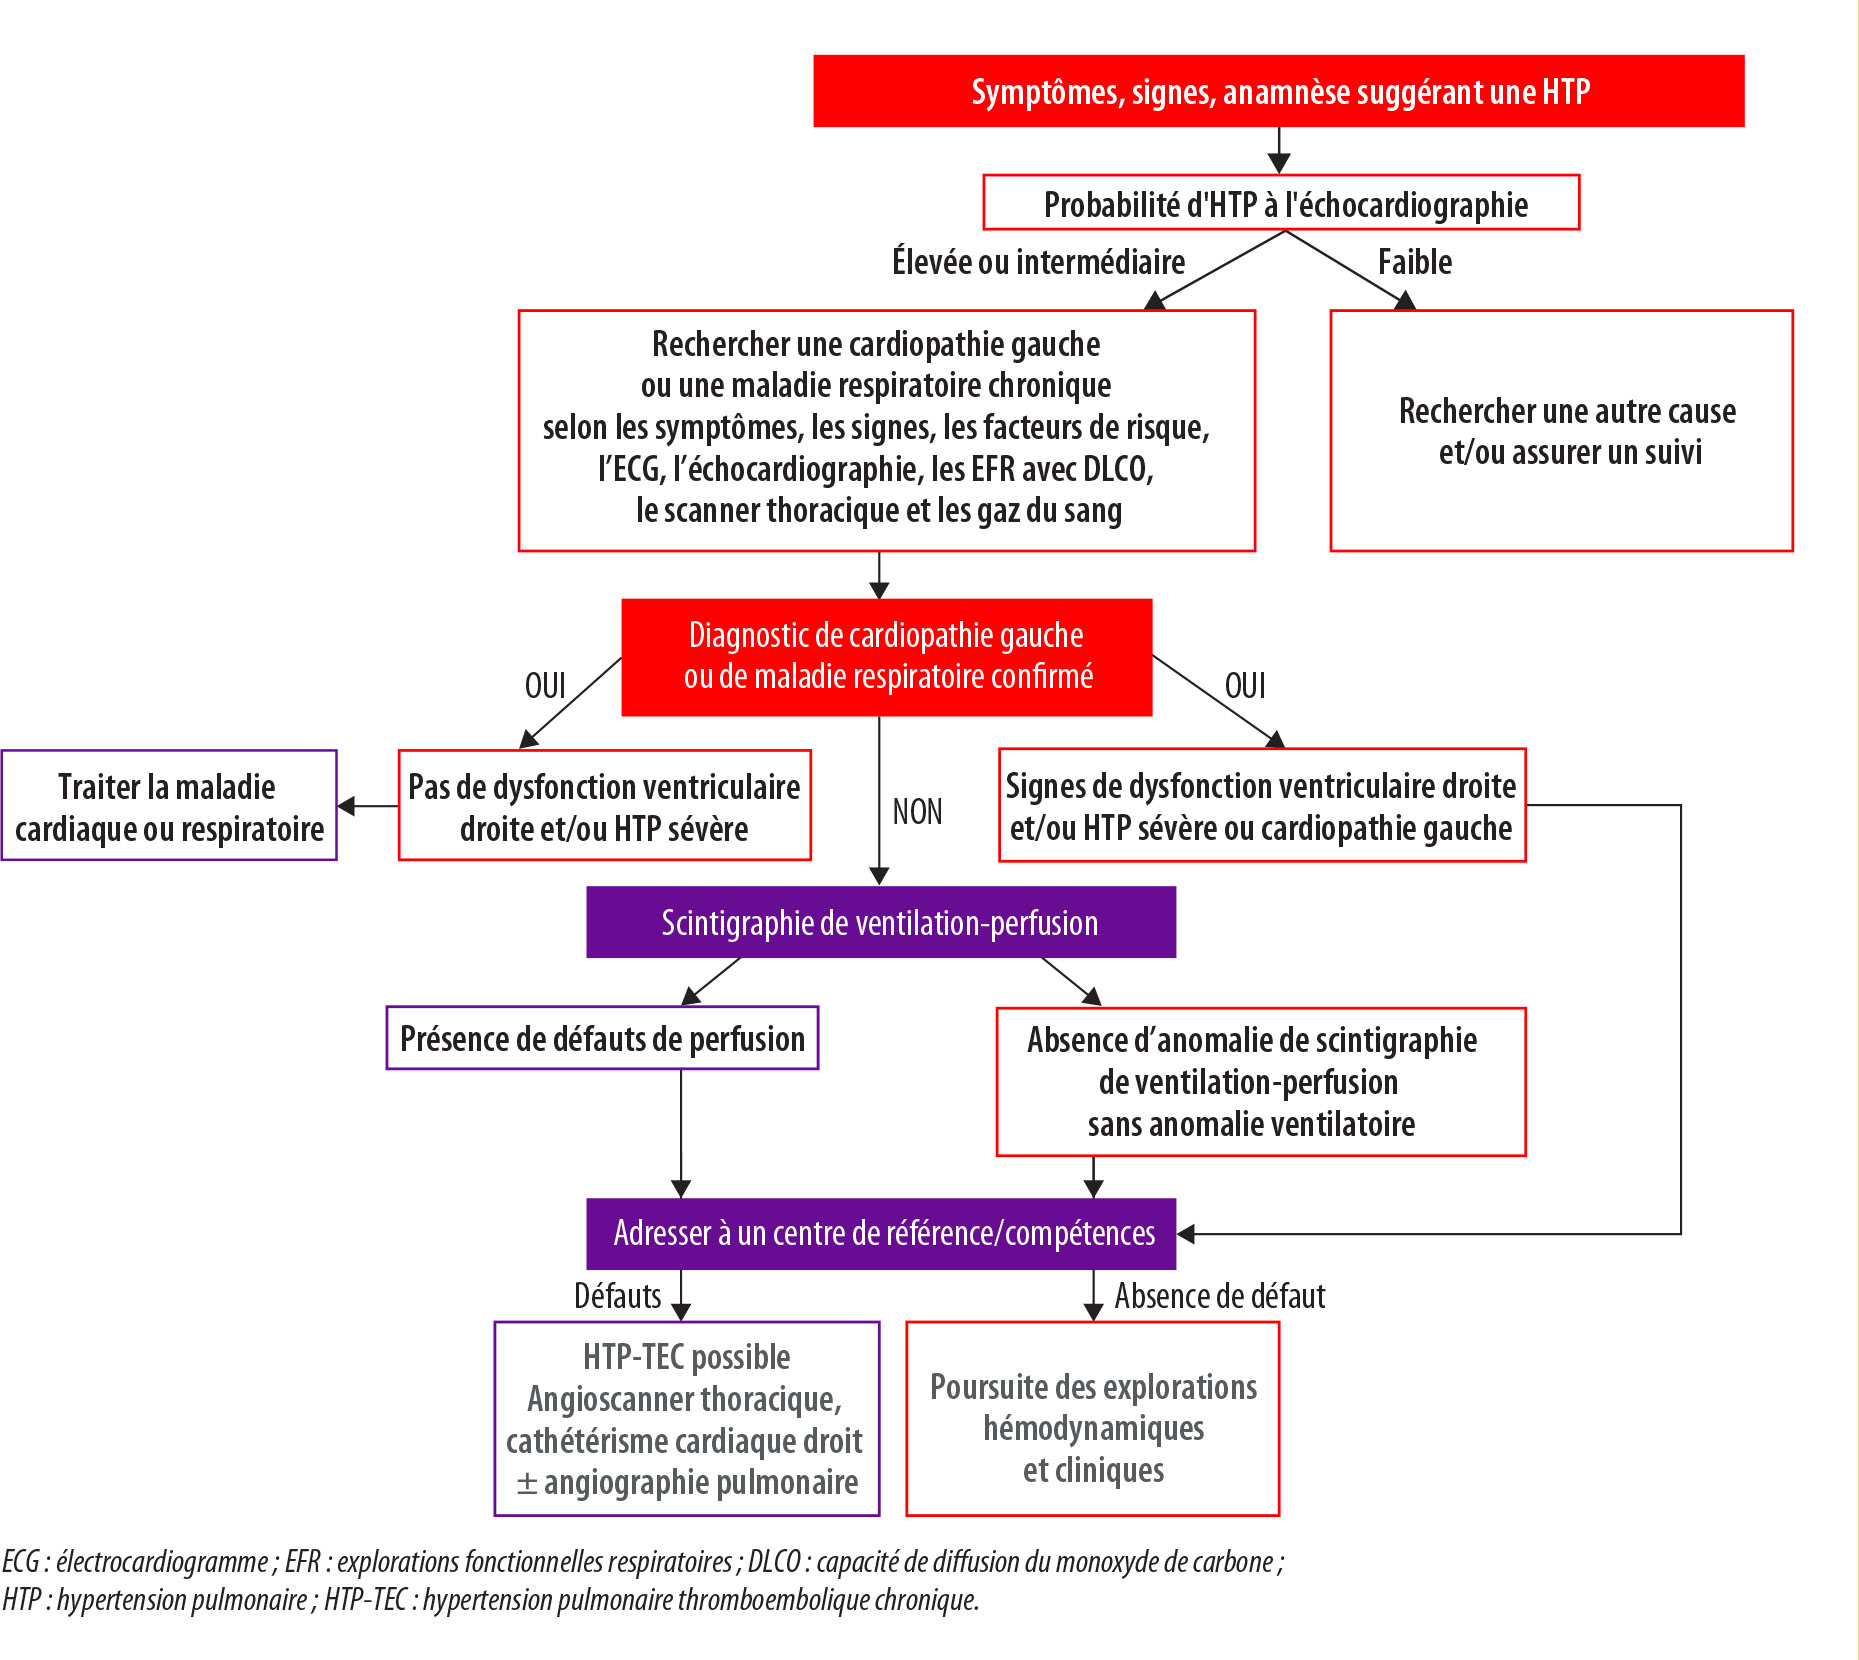 Hypertension pulmonaire thromboembolique chronique : un succès de la multidisciplinarité - Figure 1